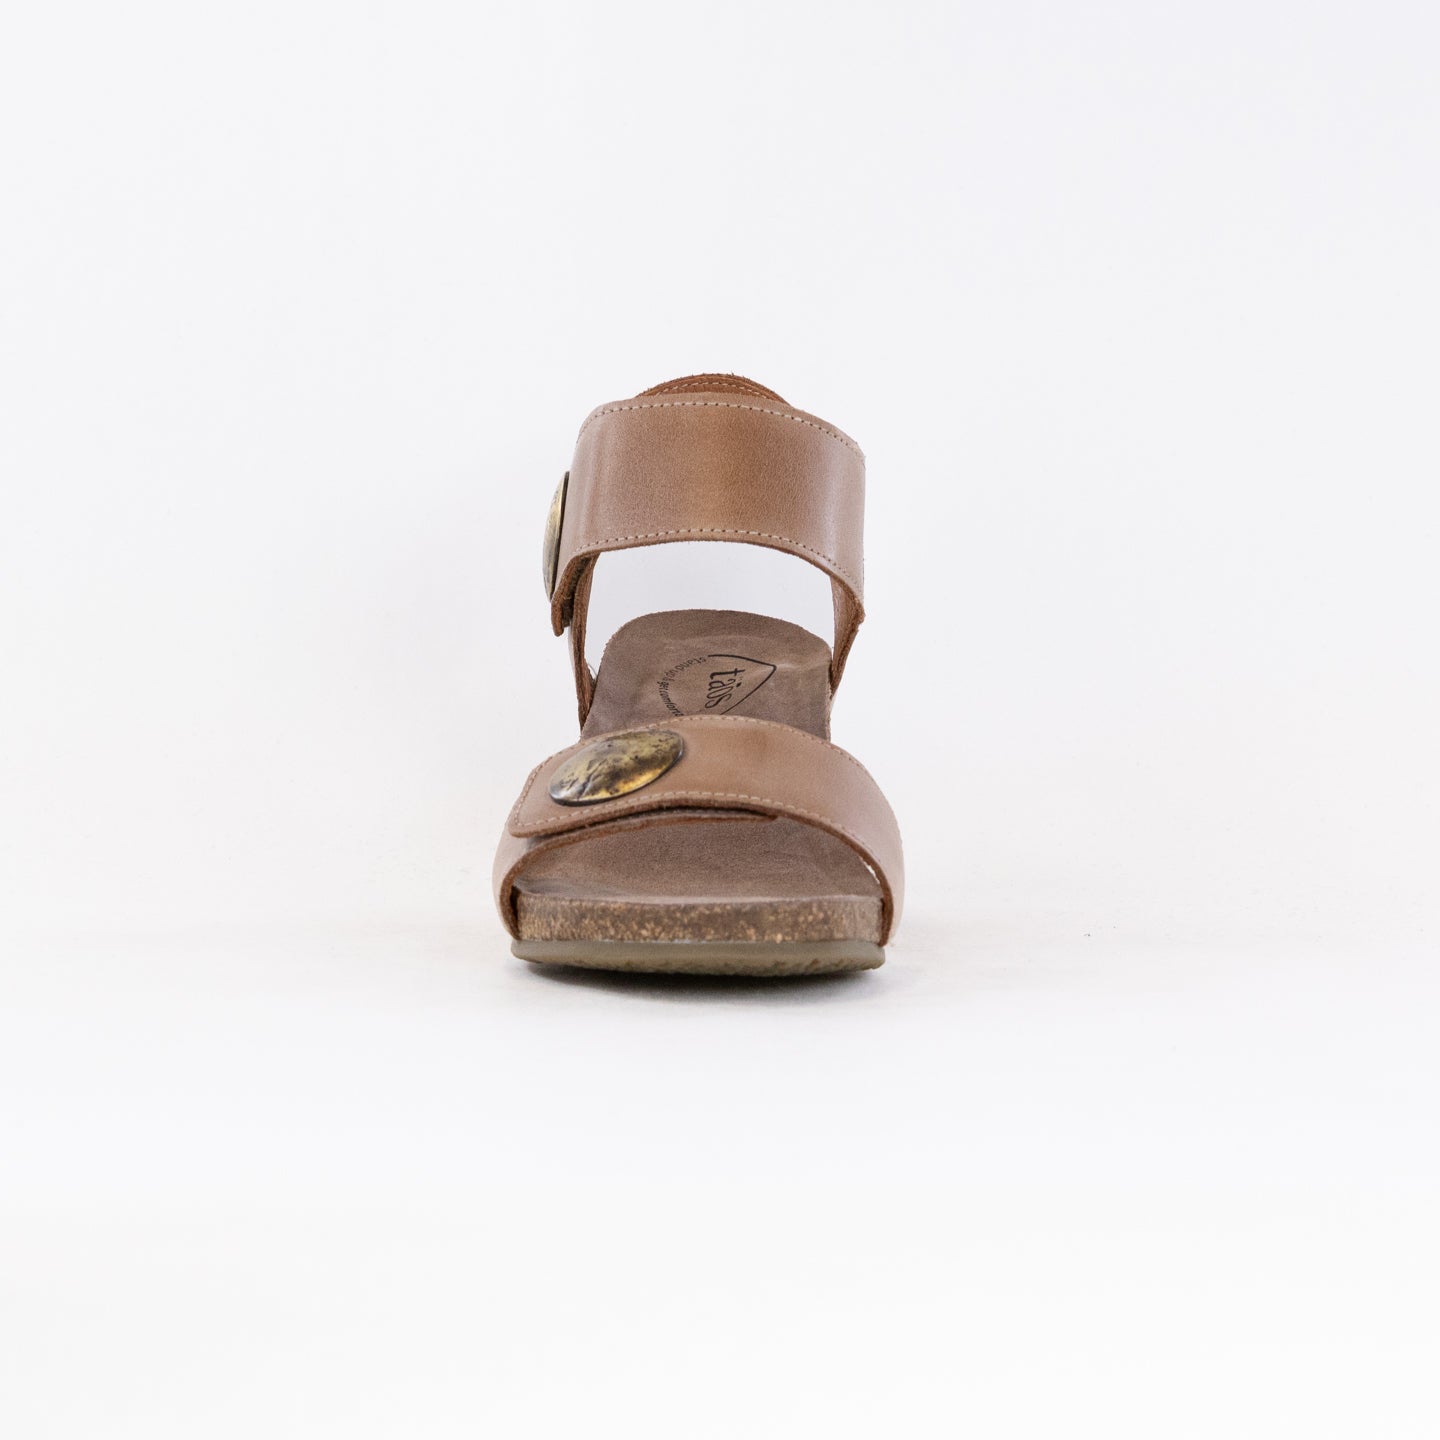 Taos Carousel 3 Wedge Sandal (Women's) - Tan Leather